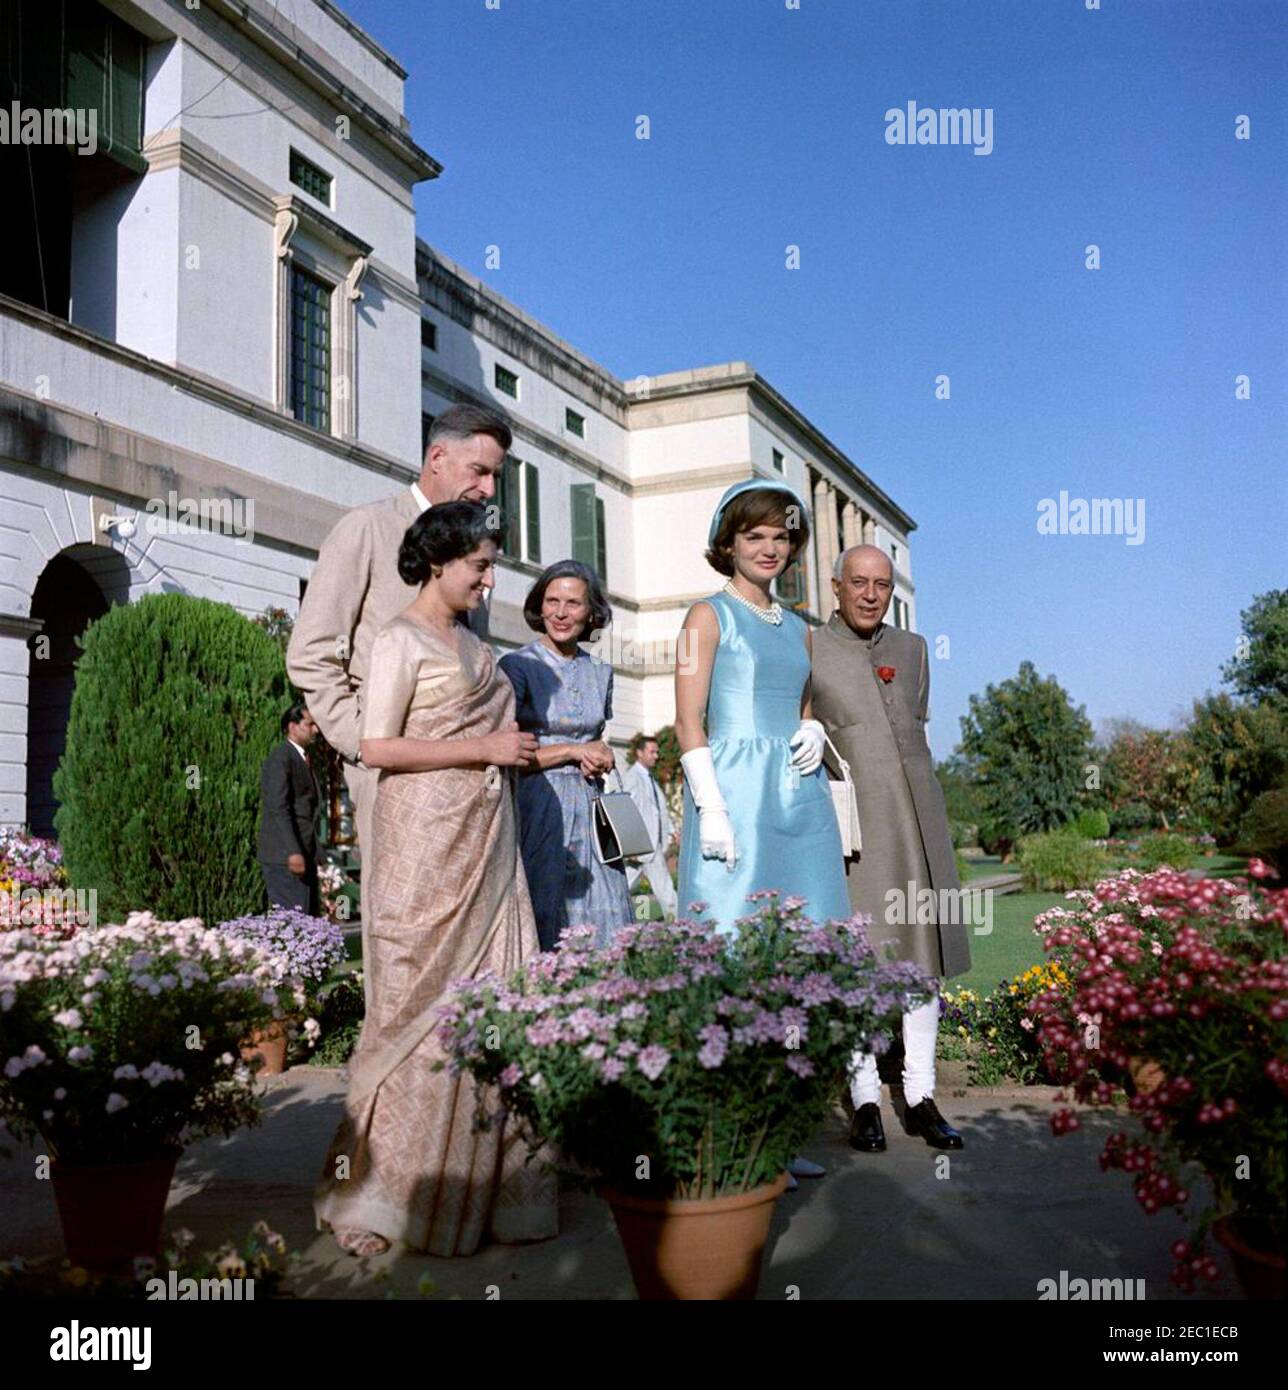 First Lady Jacqueline Kennedyu2019s (JBK) Reise nach Indien und Pakistan: Neu Delhi, Delhi, Indien, Besuch mit Premierminister von Indien Jawaharlal Nehru und US-Botschafter in Indien John Kenneth Galbraith in Prime Ministeru2019s Residenz, Teen Murti Bhavan. First Lady Jacqueline Kennedy besucht die Residenz des indischen Premierministers Jawaharlal Nehruu2019s, Teen Murti Bhavan. L-R: Indira Gandhi, Tochter des Premierministers; Botschafter der Vereinigten Staaten in Indien, John Kenneth Galbraith (hinten); Kitty Galbraith; Frau Kennedy; Premierminister Nehru. Neu Delhi, Indien. Stockfoto